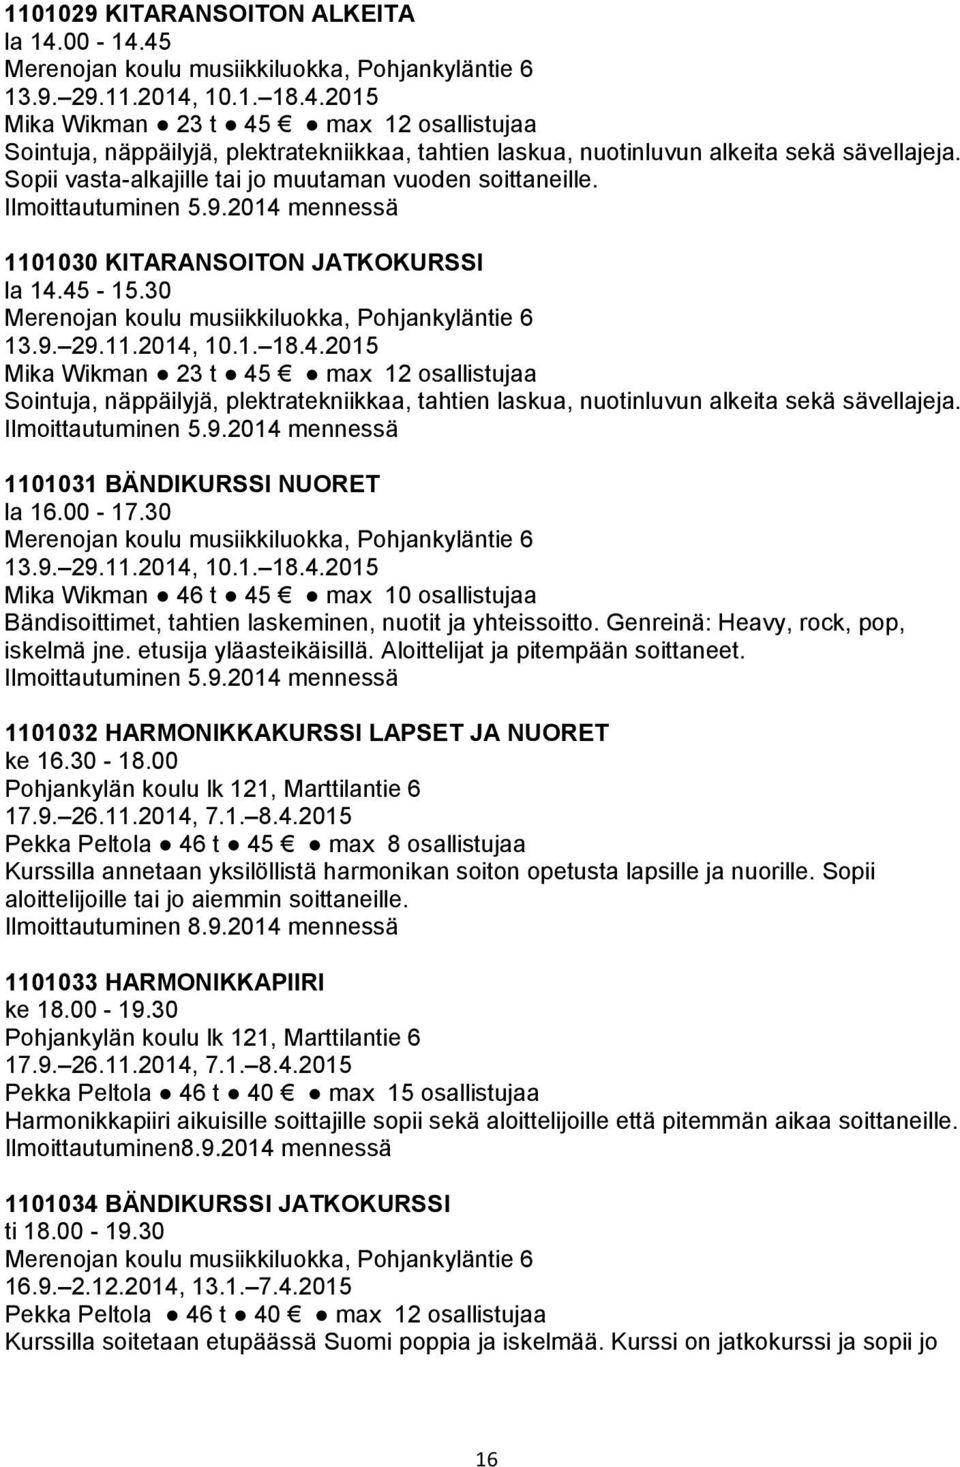 11.2014, 10.1. 18.4.2015 Mika Wikman 23 t 45 max 12 osallistujaa Sointuja, näppäilyjä, plektratekniikkaa, tahtien laskua, nuotinluvun alkeita sekä sävellajeja. Ilmoittautuminen 5.9.